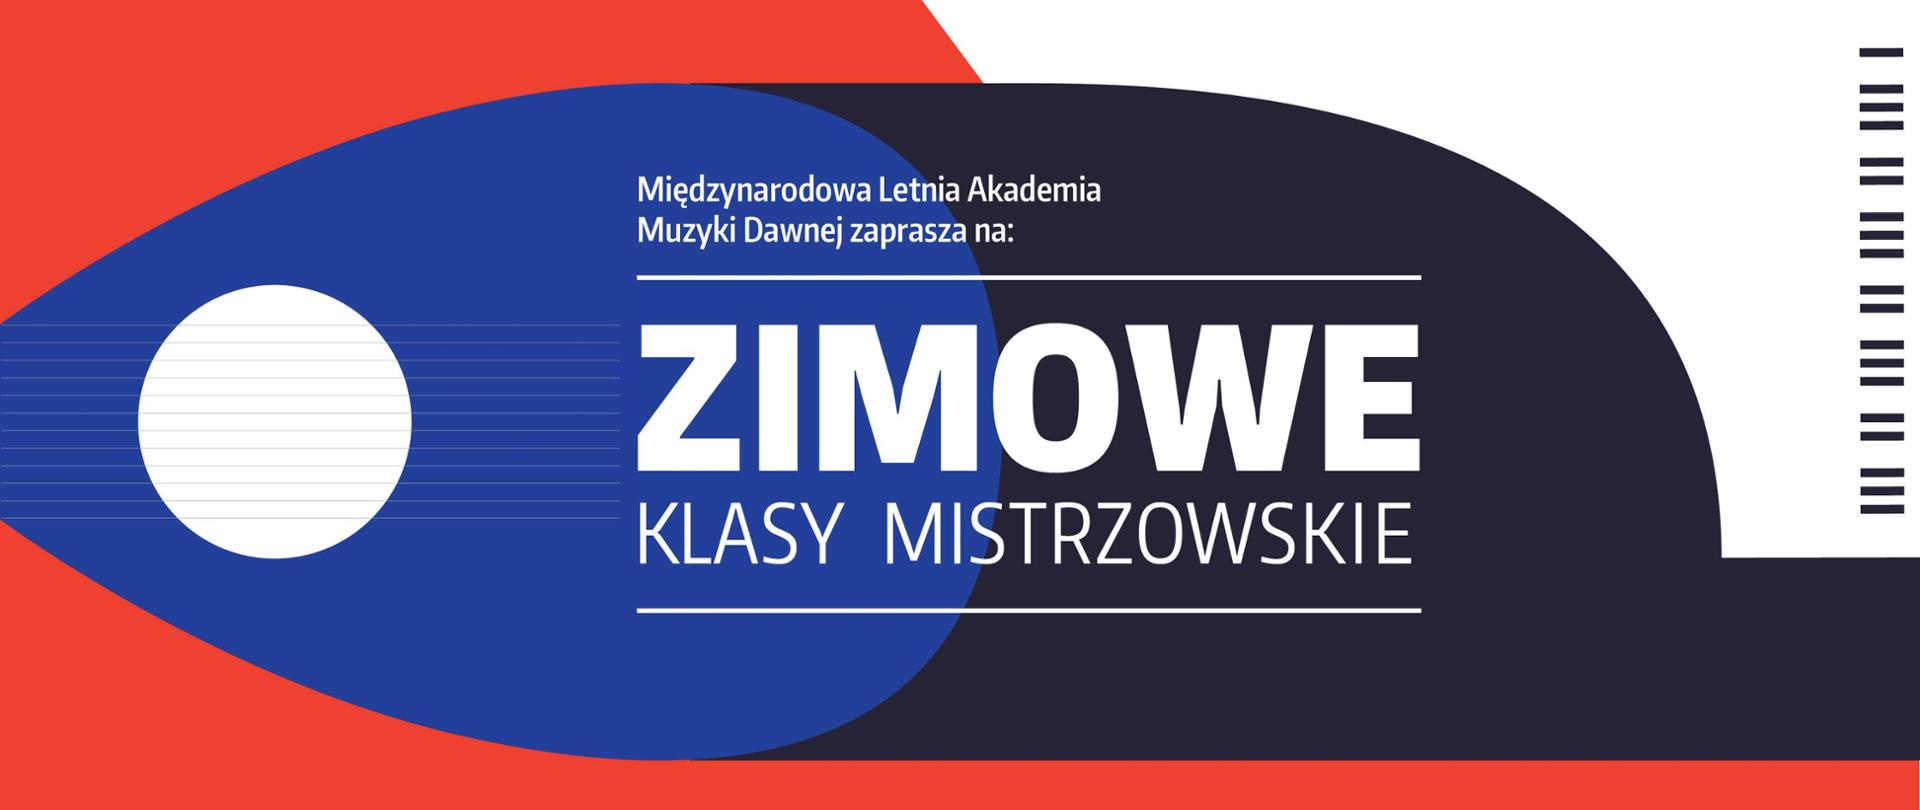 Baner na Zimowe Klasy Mistrzowskie zawiera nazwę Międzynarodowej Letniej Akademii Muzyki Dawnej jako, grafika biało-granatowo-niebieska.